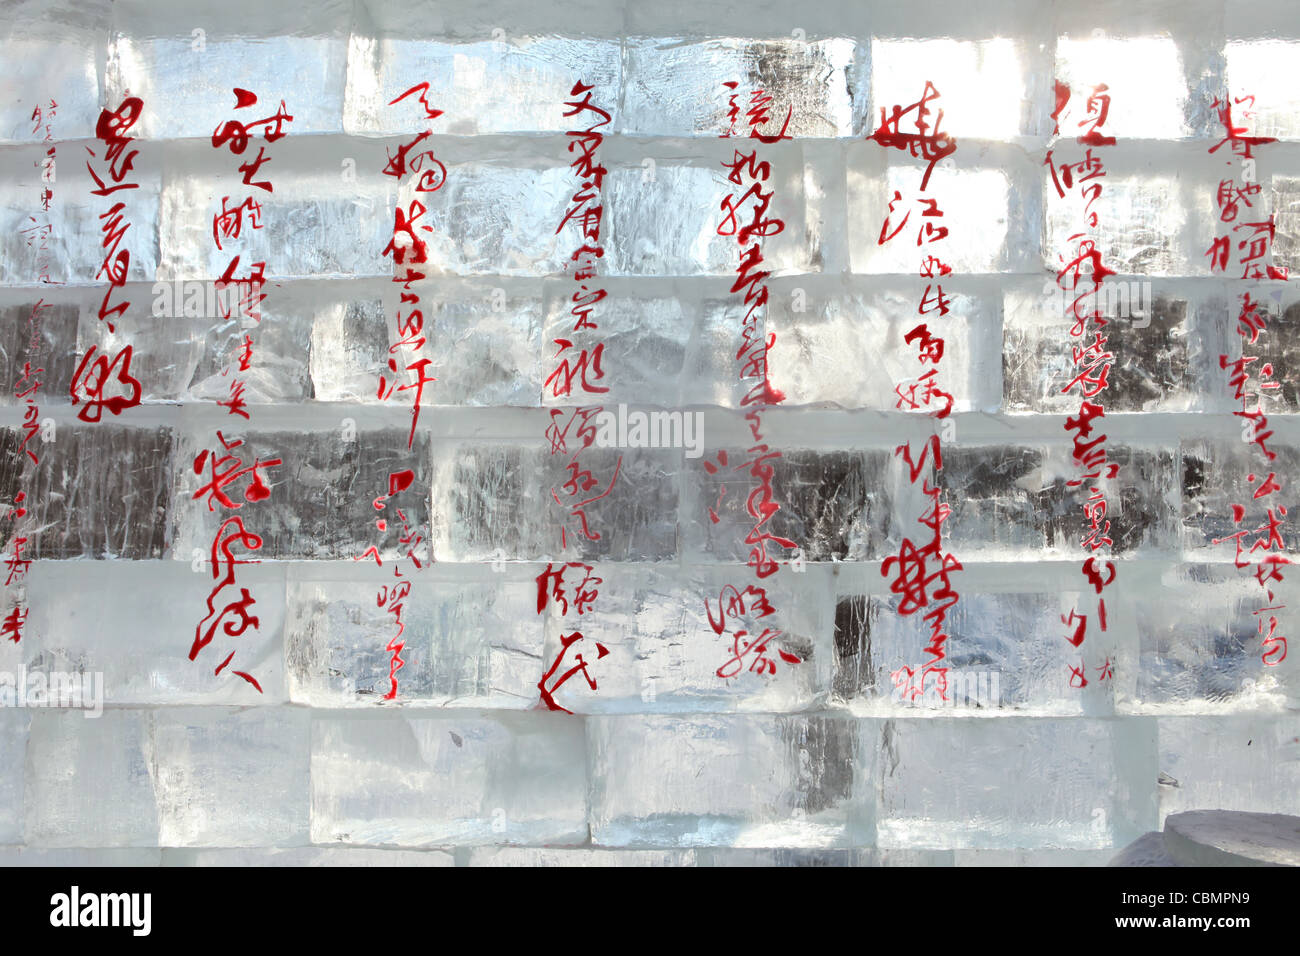 Ice and snow festival, Harbin, China, Heilongjiang Stock Photo